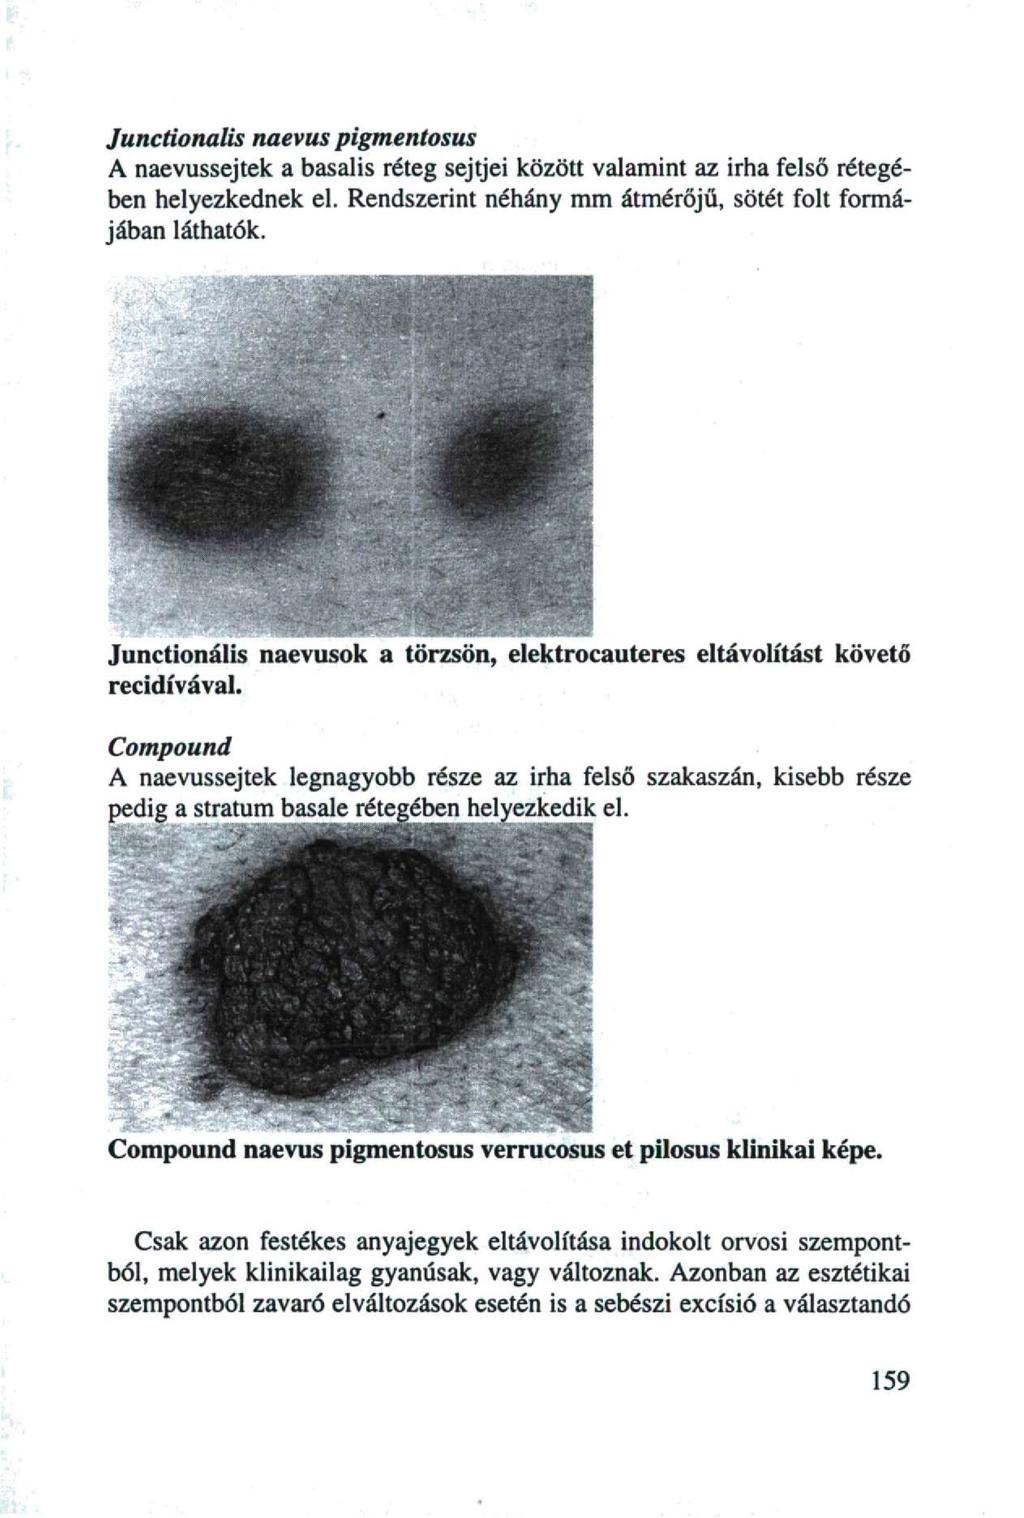 Junctionalis naevus pigmentosus A naevussejtek a basalis réteg sejtjei között valamint az irha felső rétegében helyezkednek el. Rendszerint néhány mm átmérőjű, sötét folt formájában láthatók.